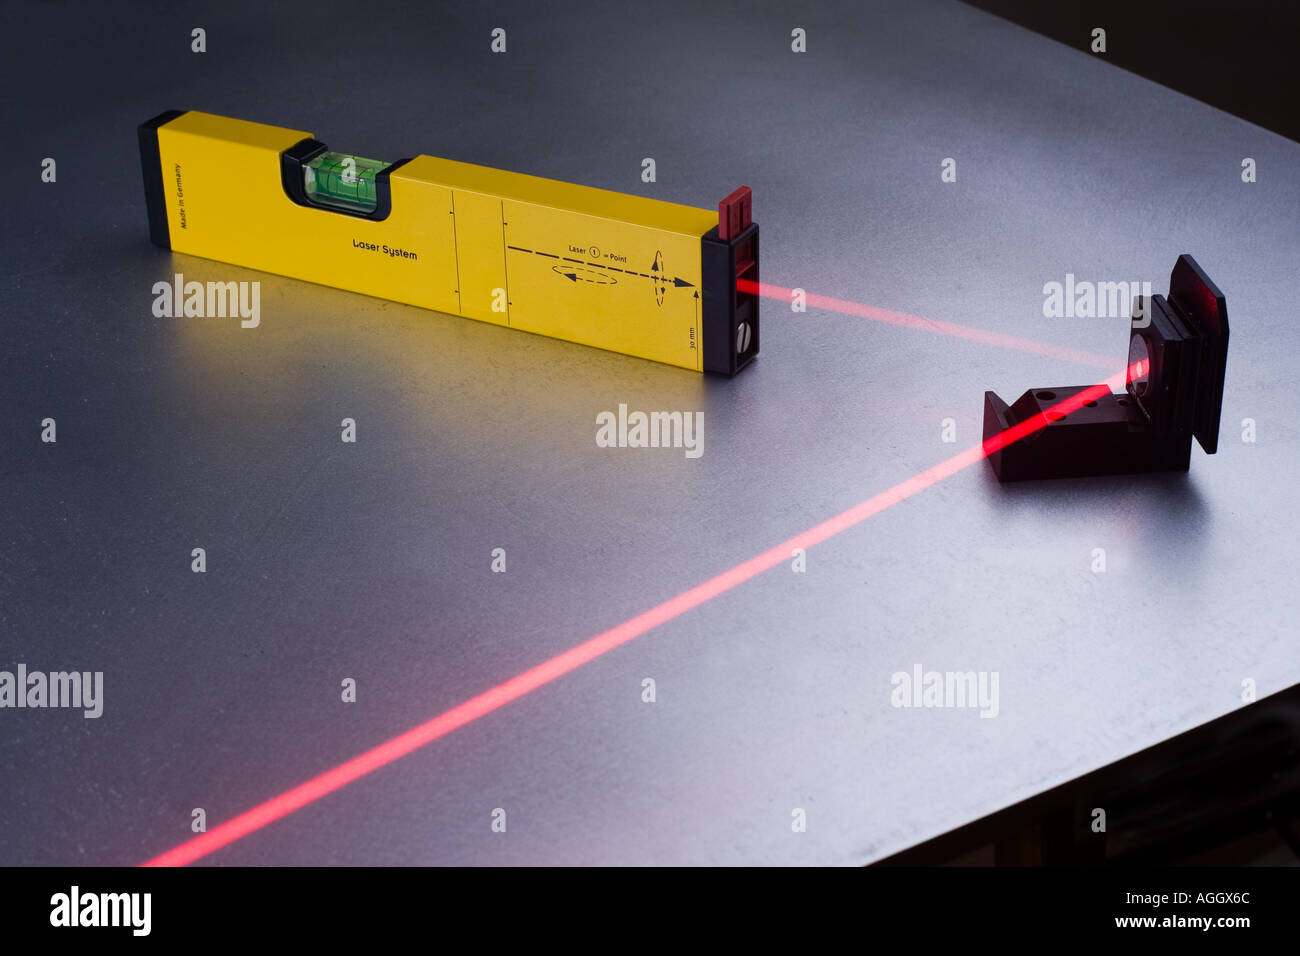 Eine Laser-Wasserwaage einen Strahl aus einem Spiegel reflektiert  Stockfotografie - Alamy